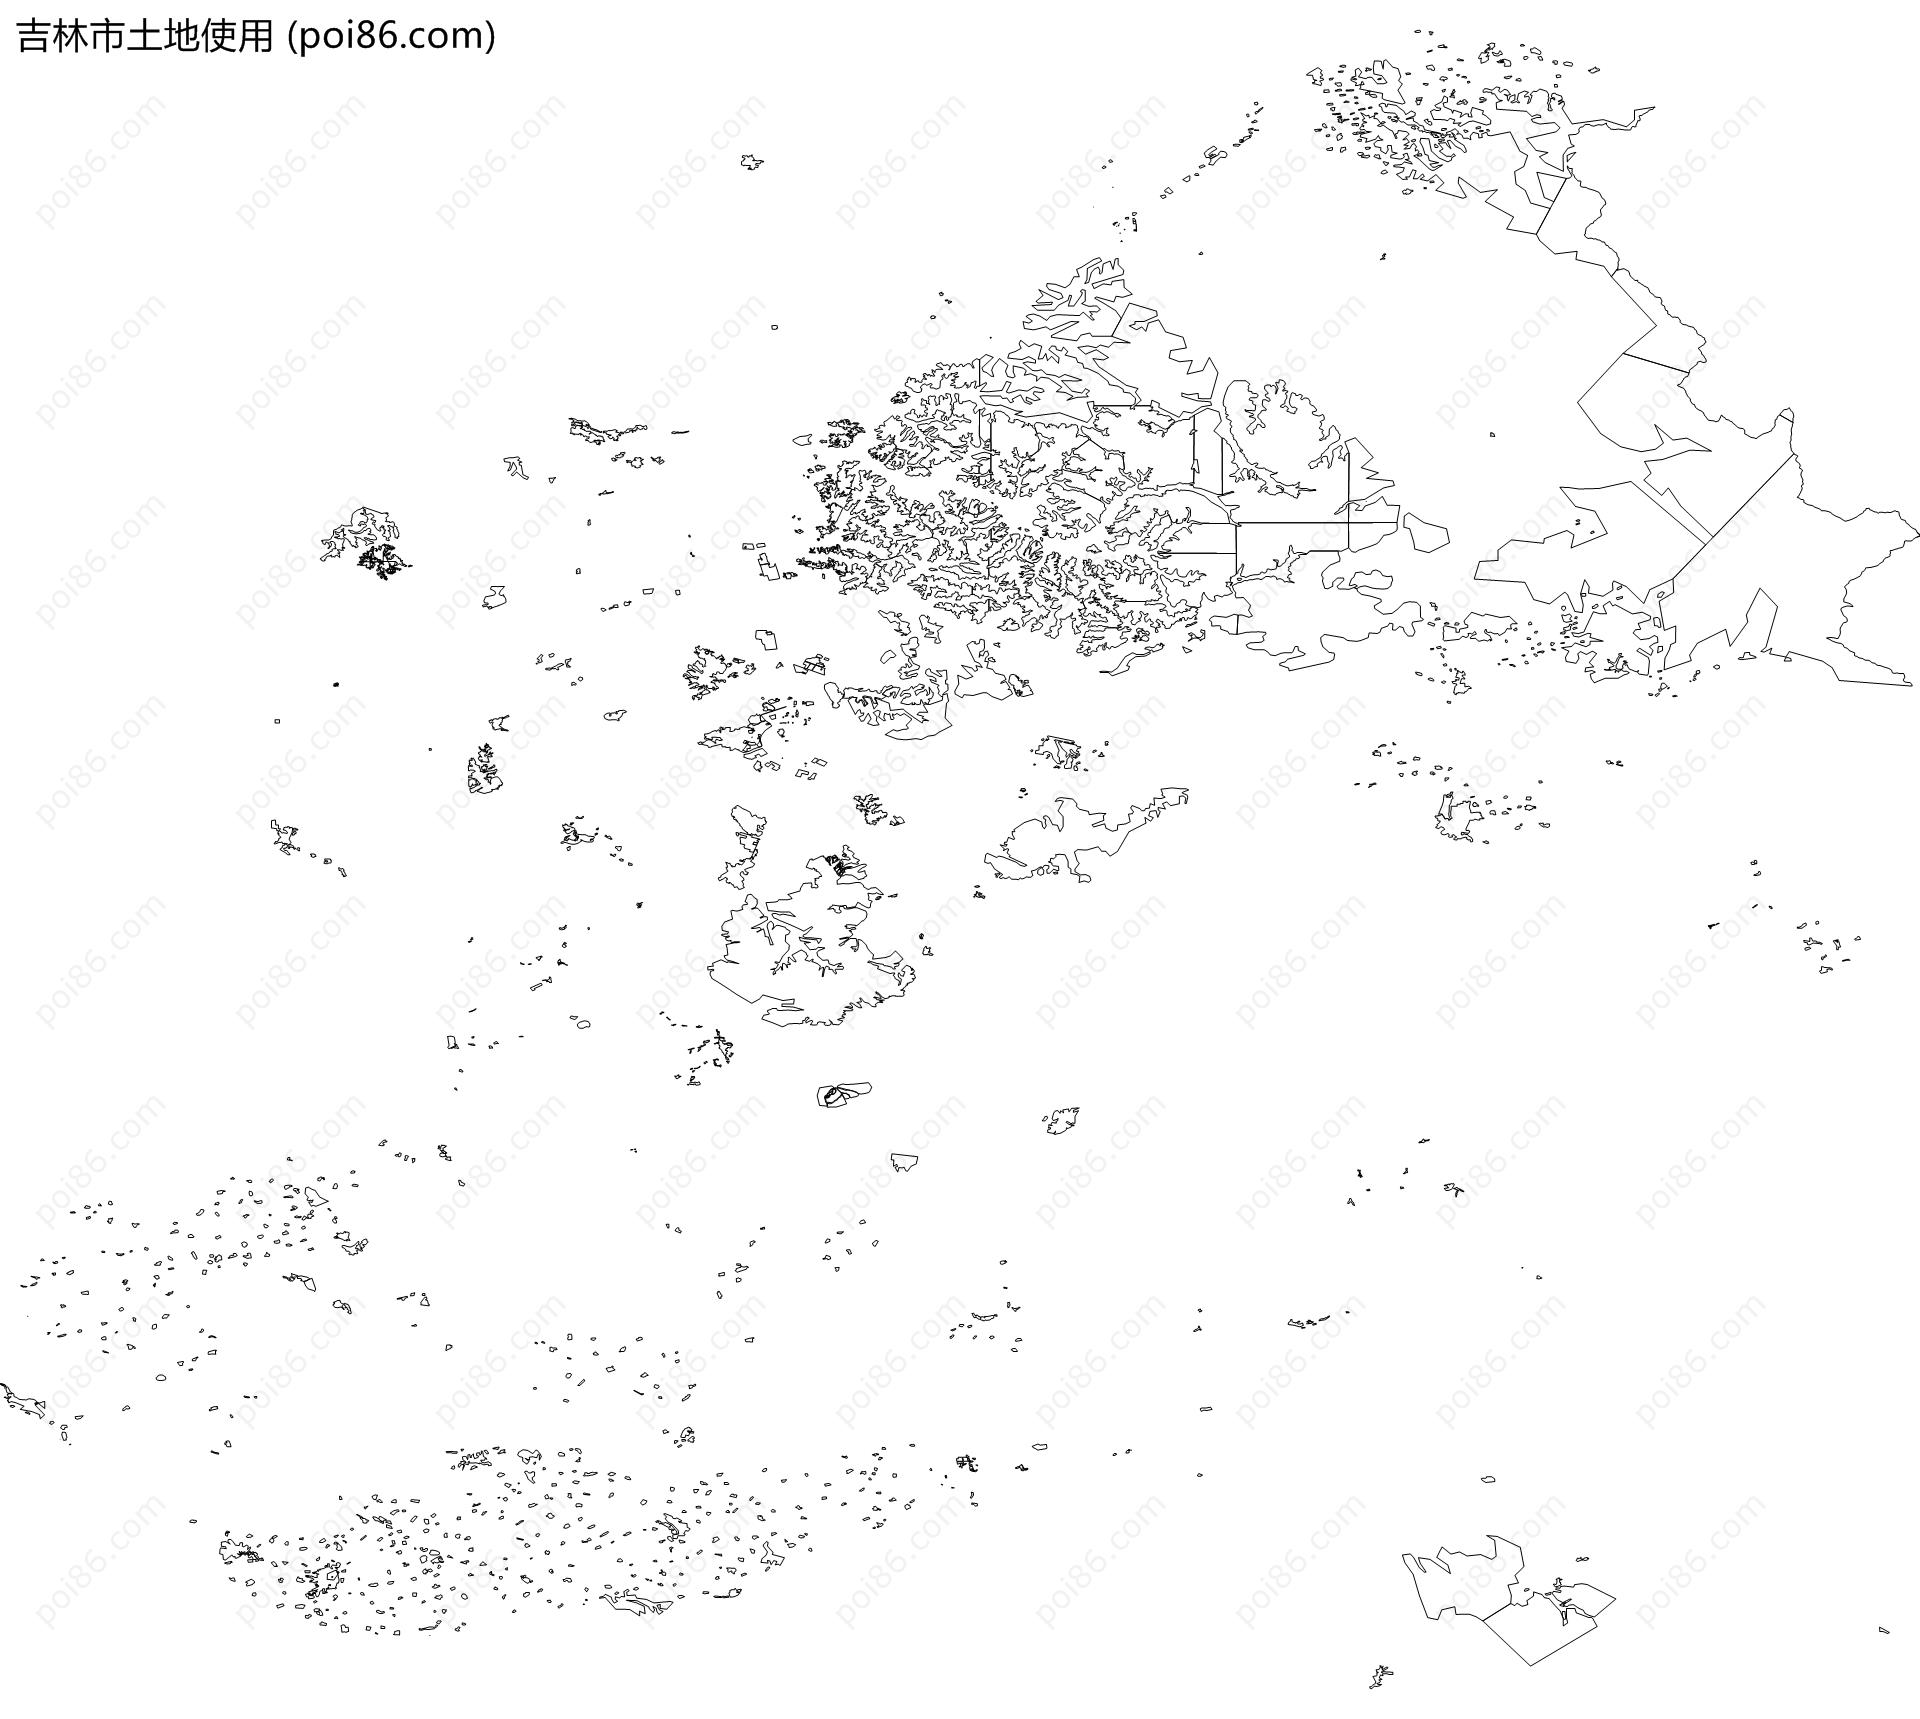 吉林市土地使用地图